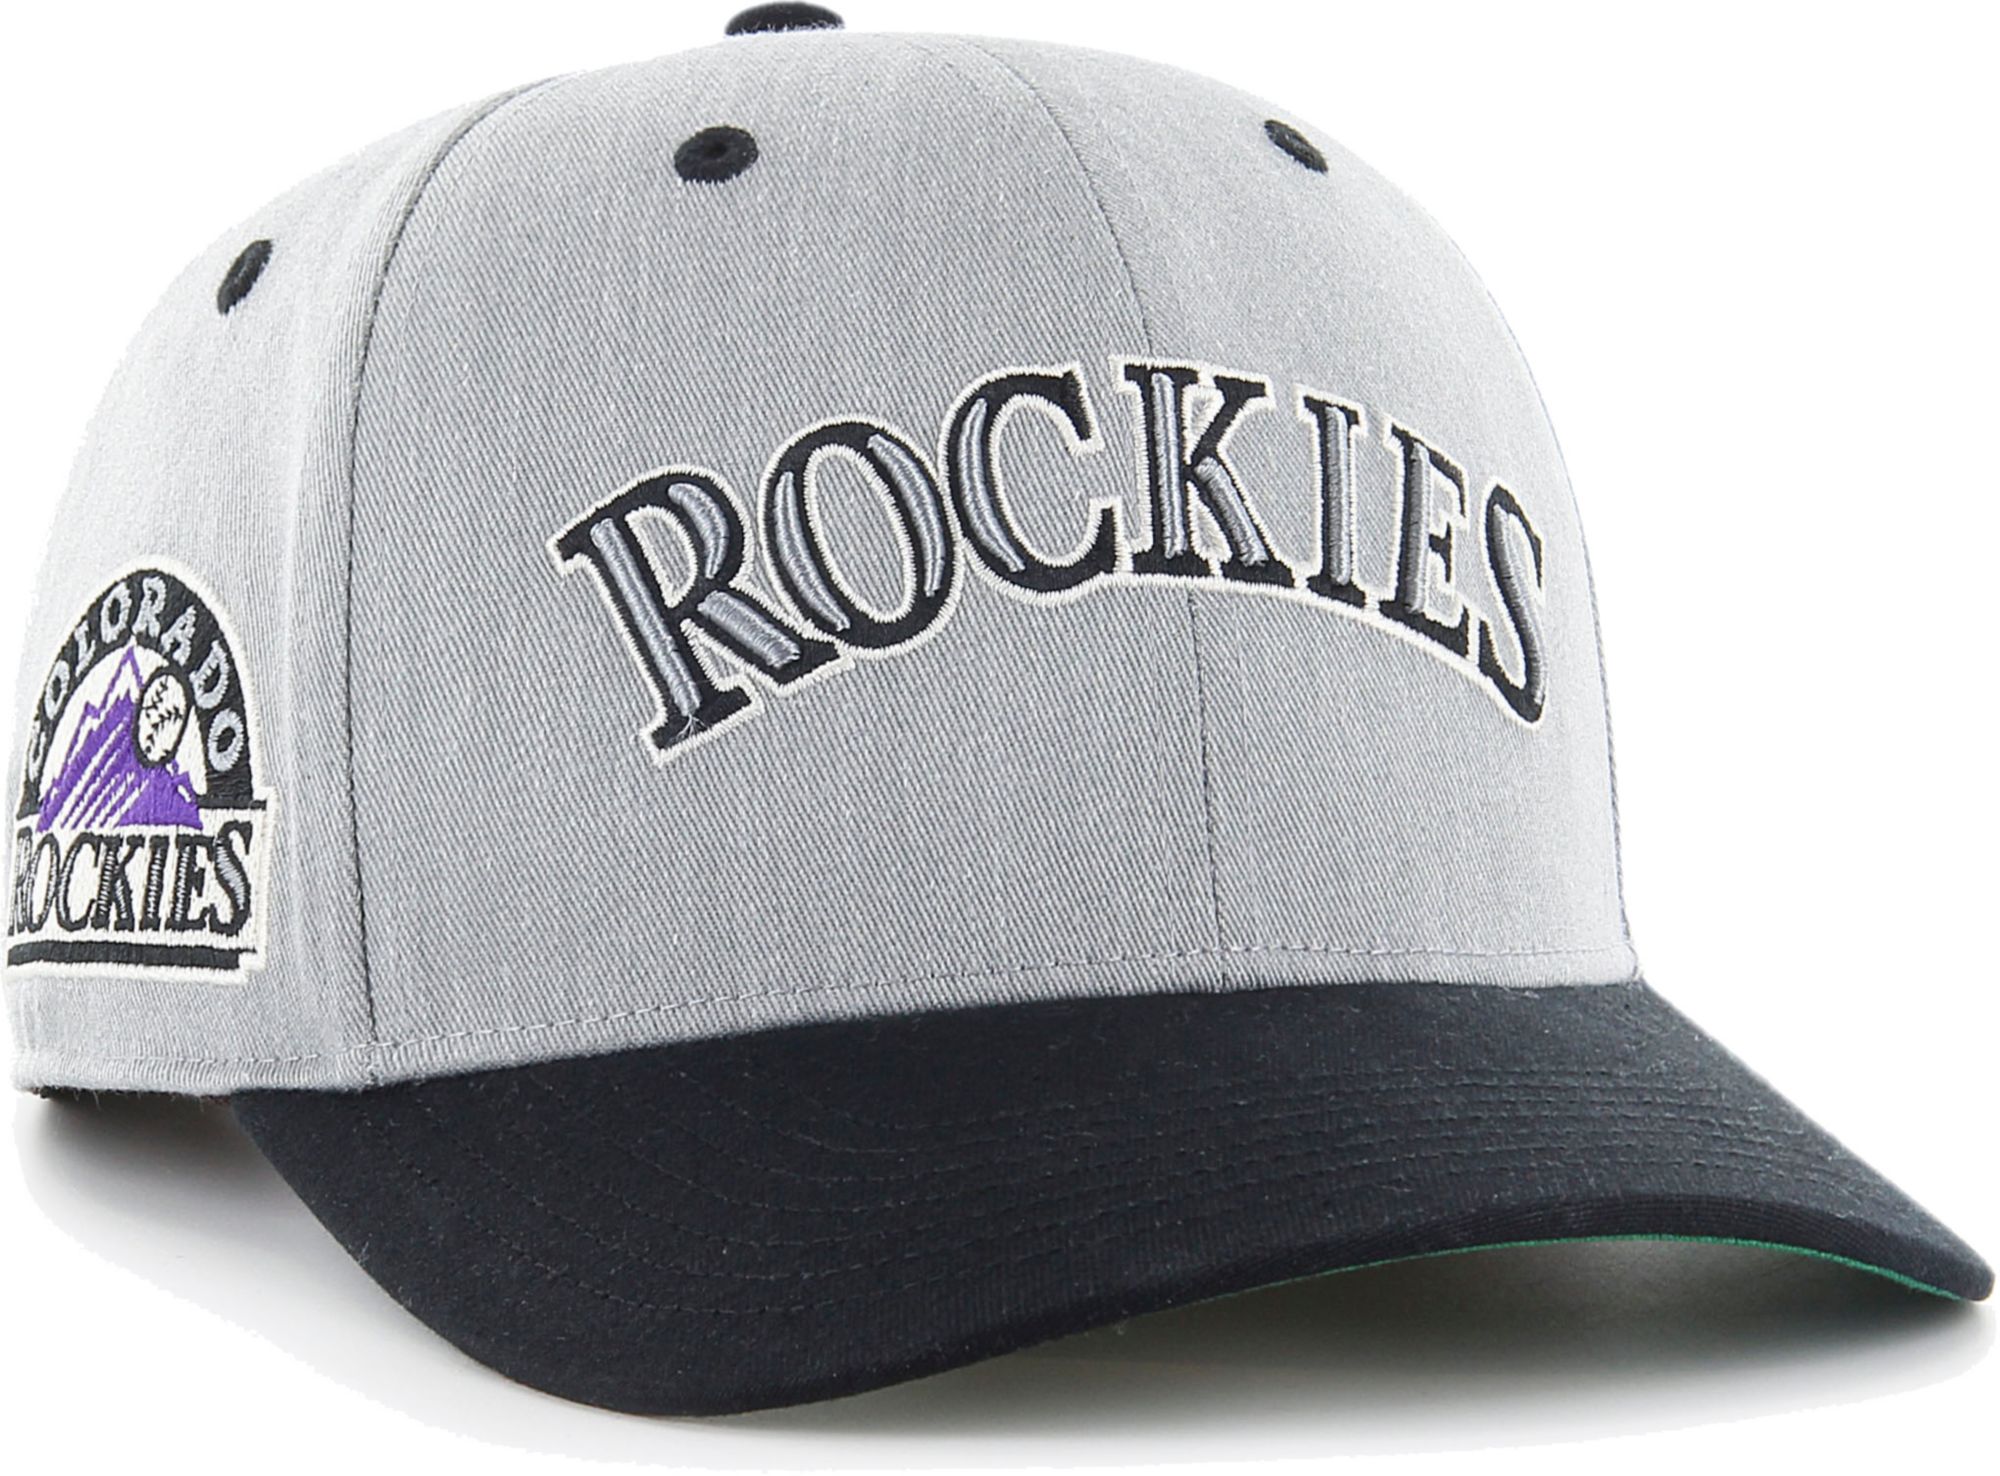 colorado rockies vintage cap